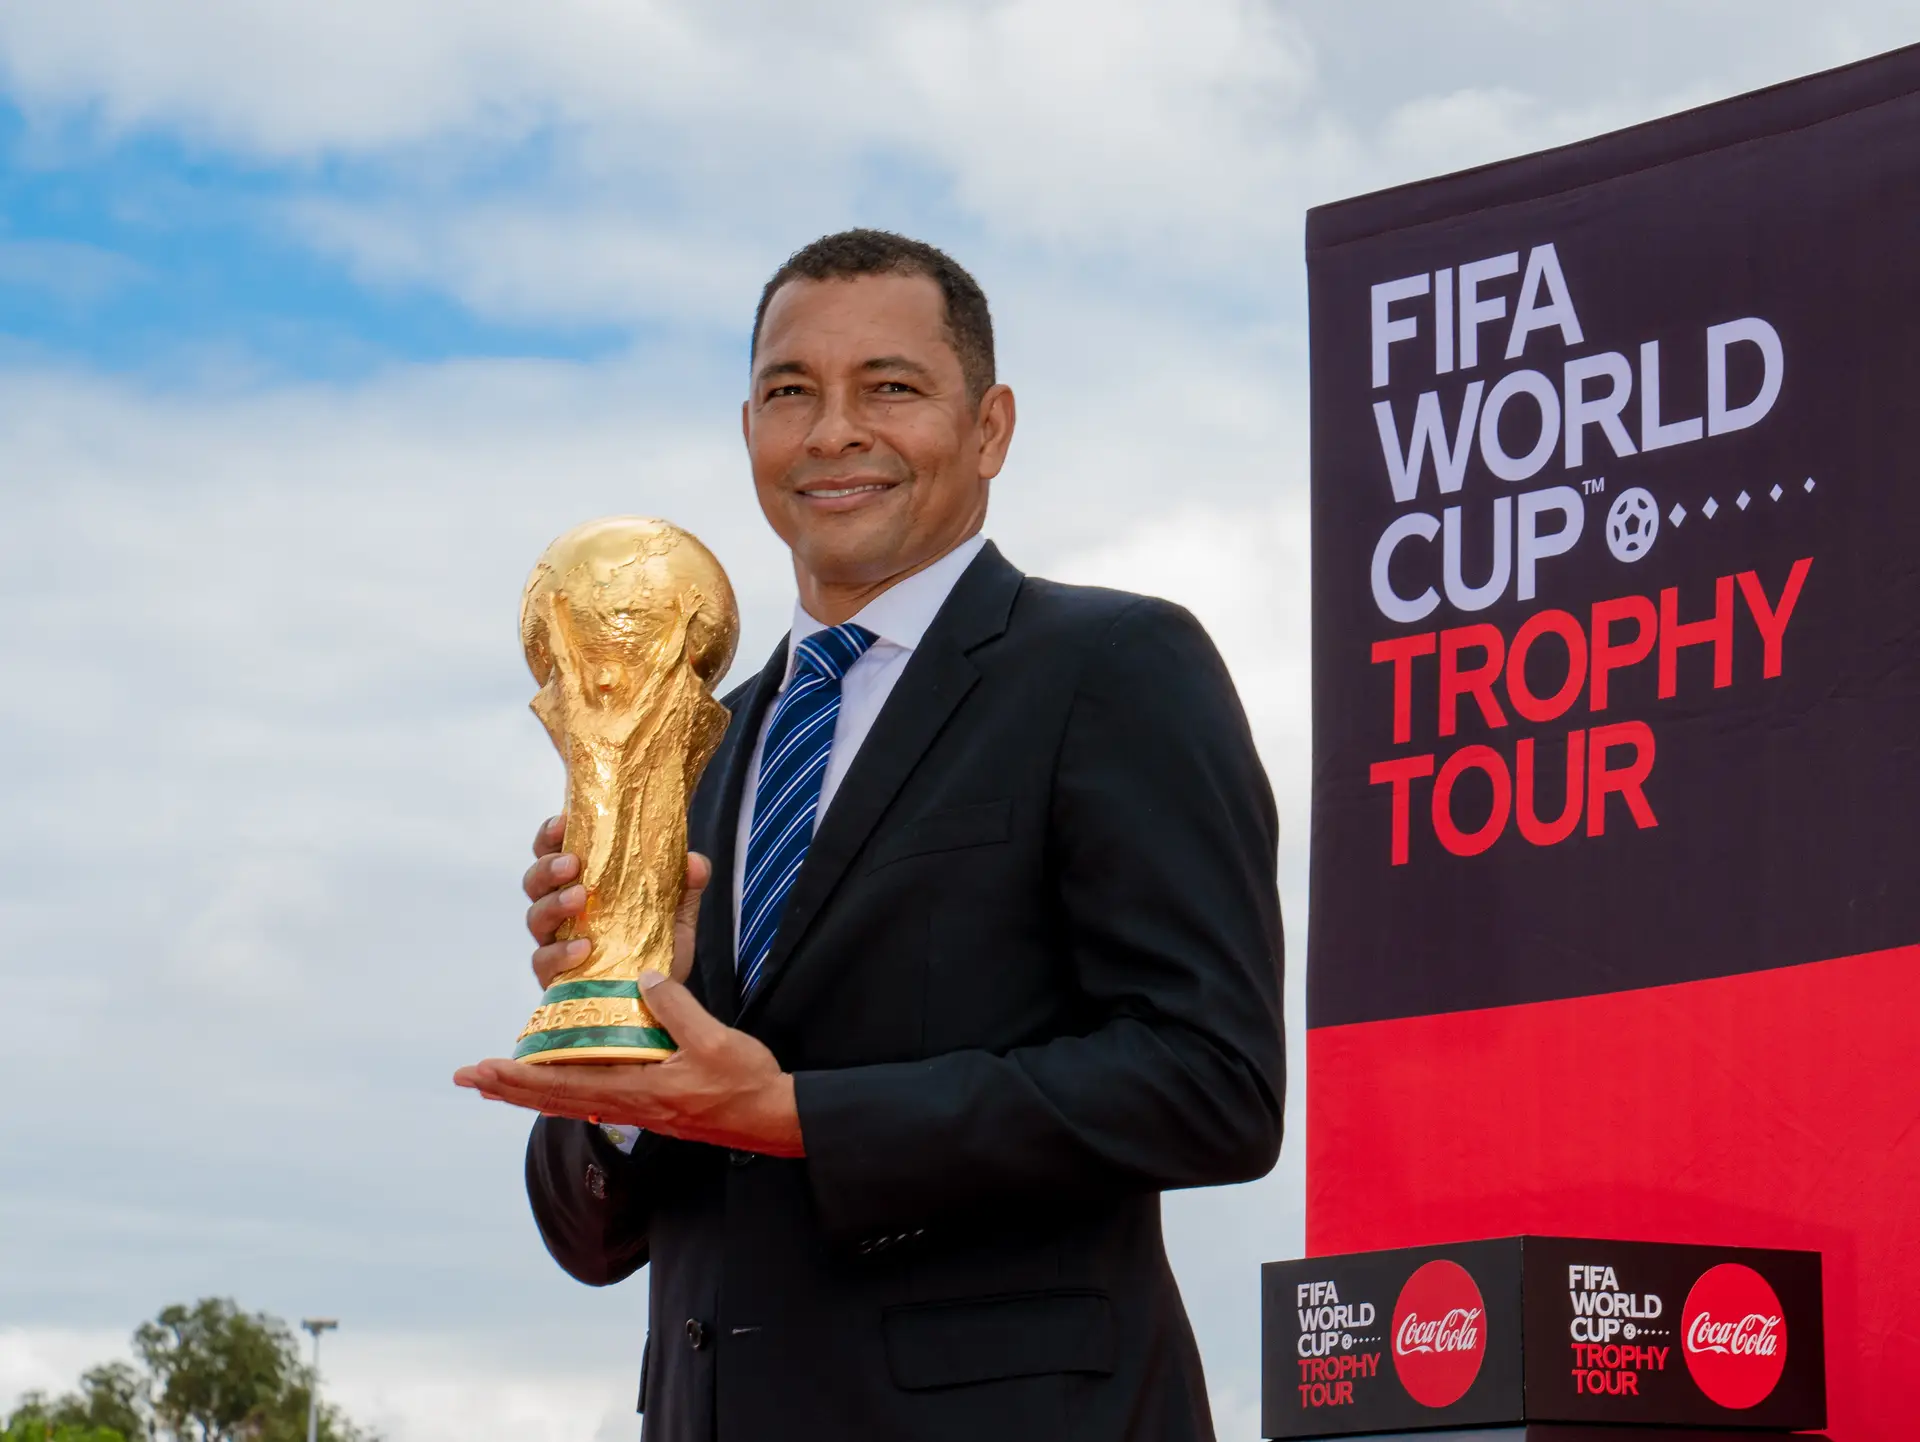 Portugal acolhe troféu mais desejado no mundo, mas por poucas horas